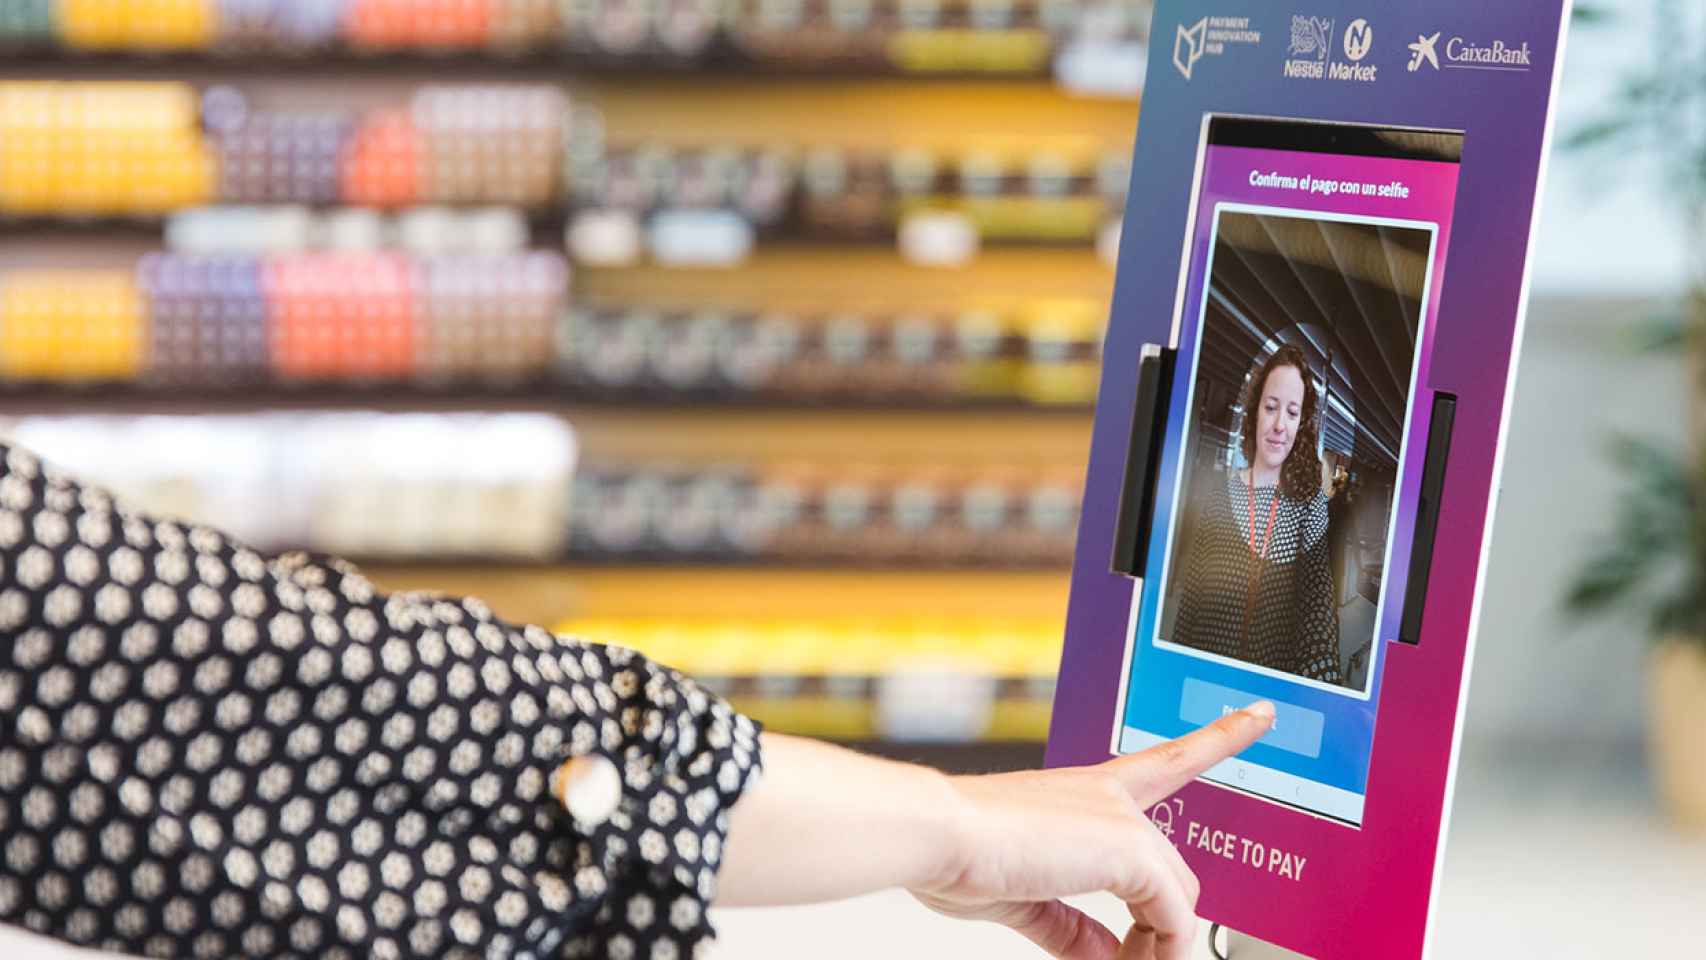 Un cliente pagando con la app Face to Pay de CaixaBank y Nestlé Market.